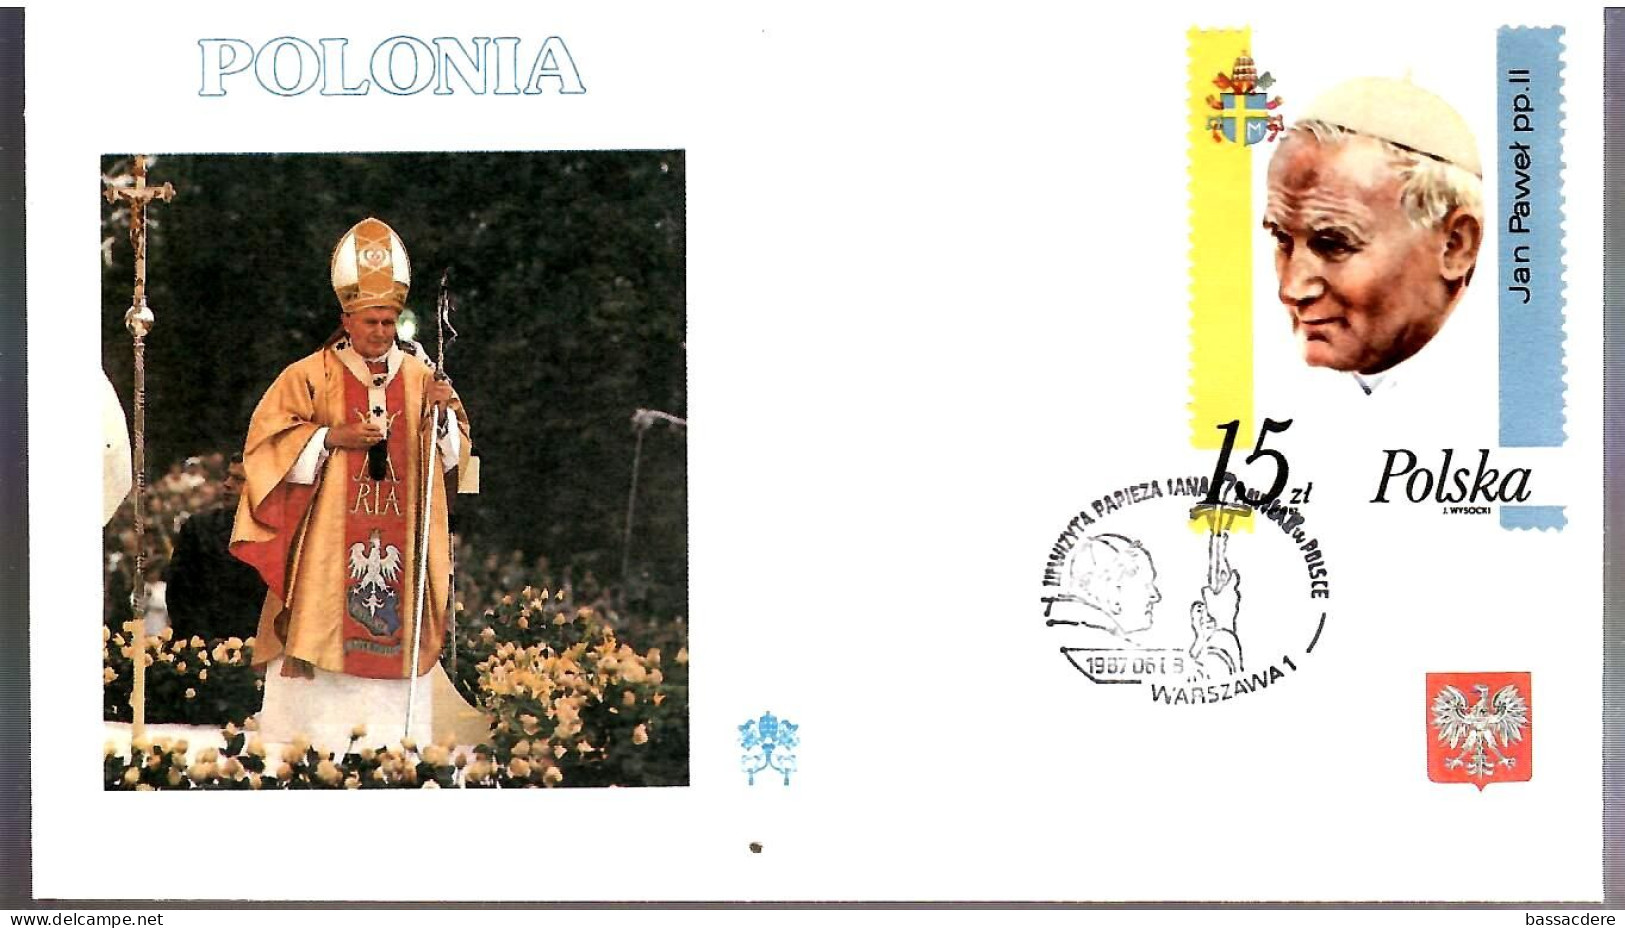 79497 - 10 enveloppes  pour  voyage  du Pape JEAN PAUL  II